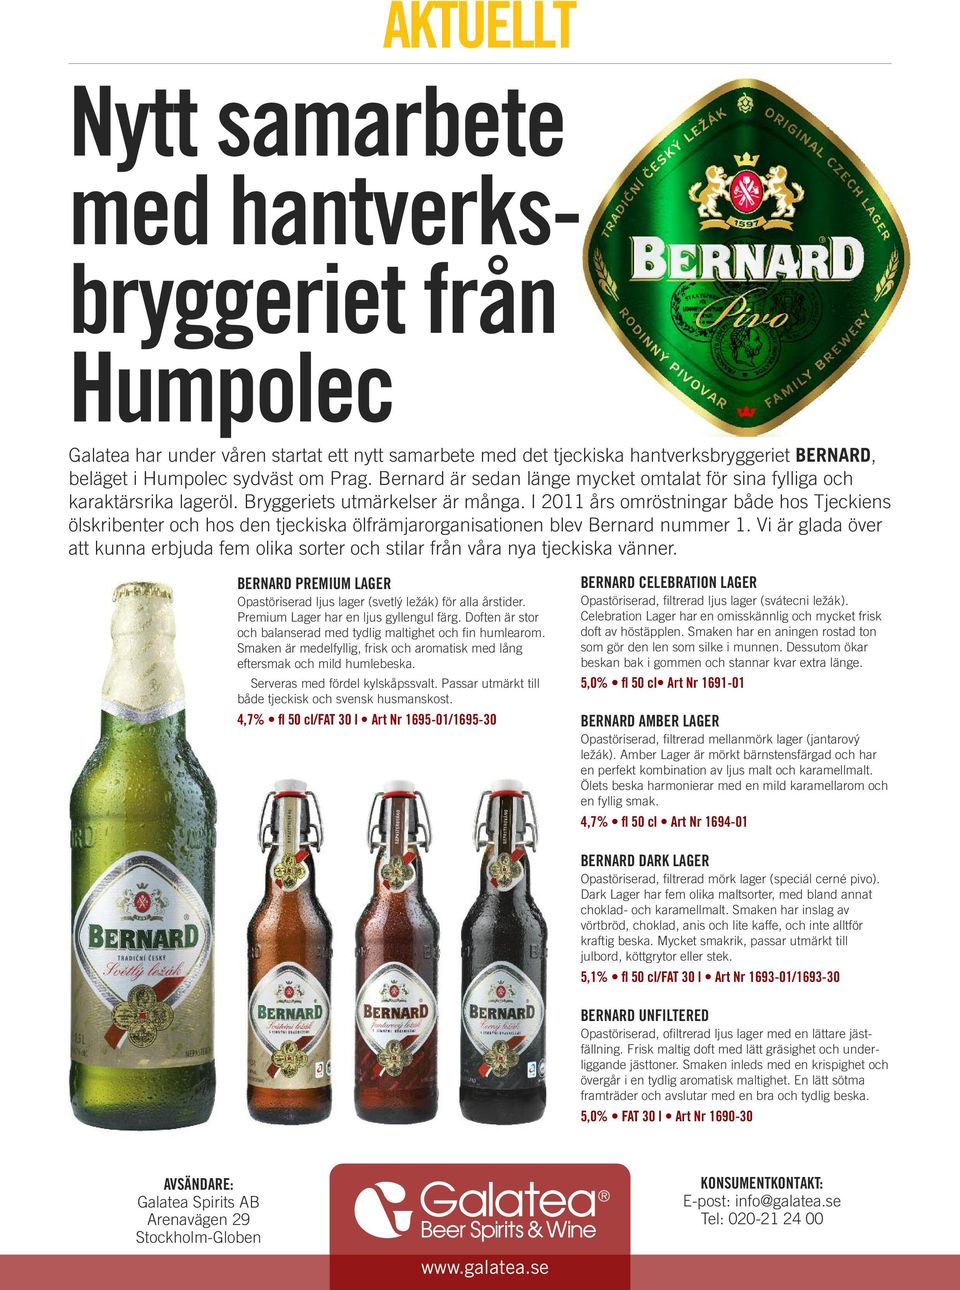 I 2011 års omröstningar både hos Tjeckiens ölskribenter och hos den tjeckiska ölfrämjarorganisationen blev Bernard nummer 1.